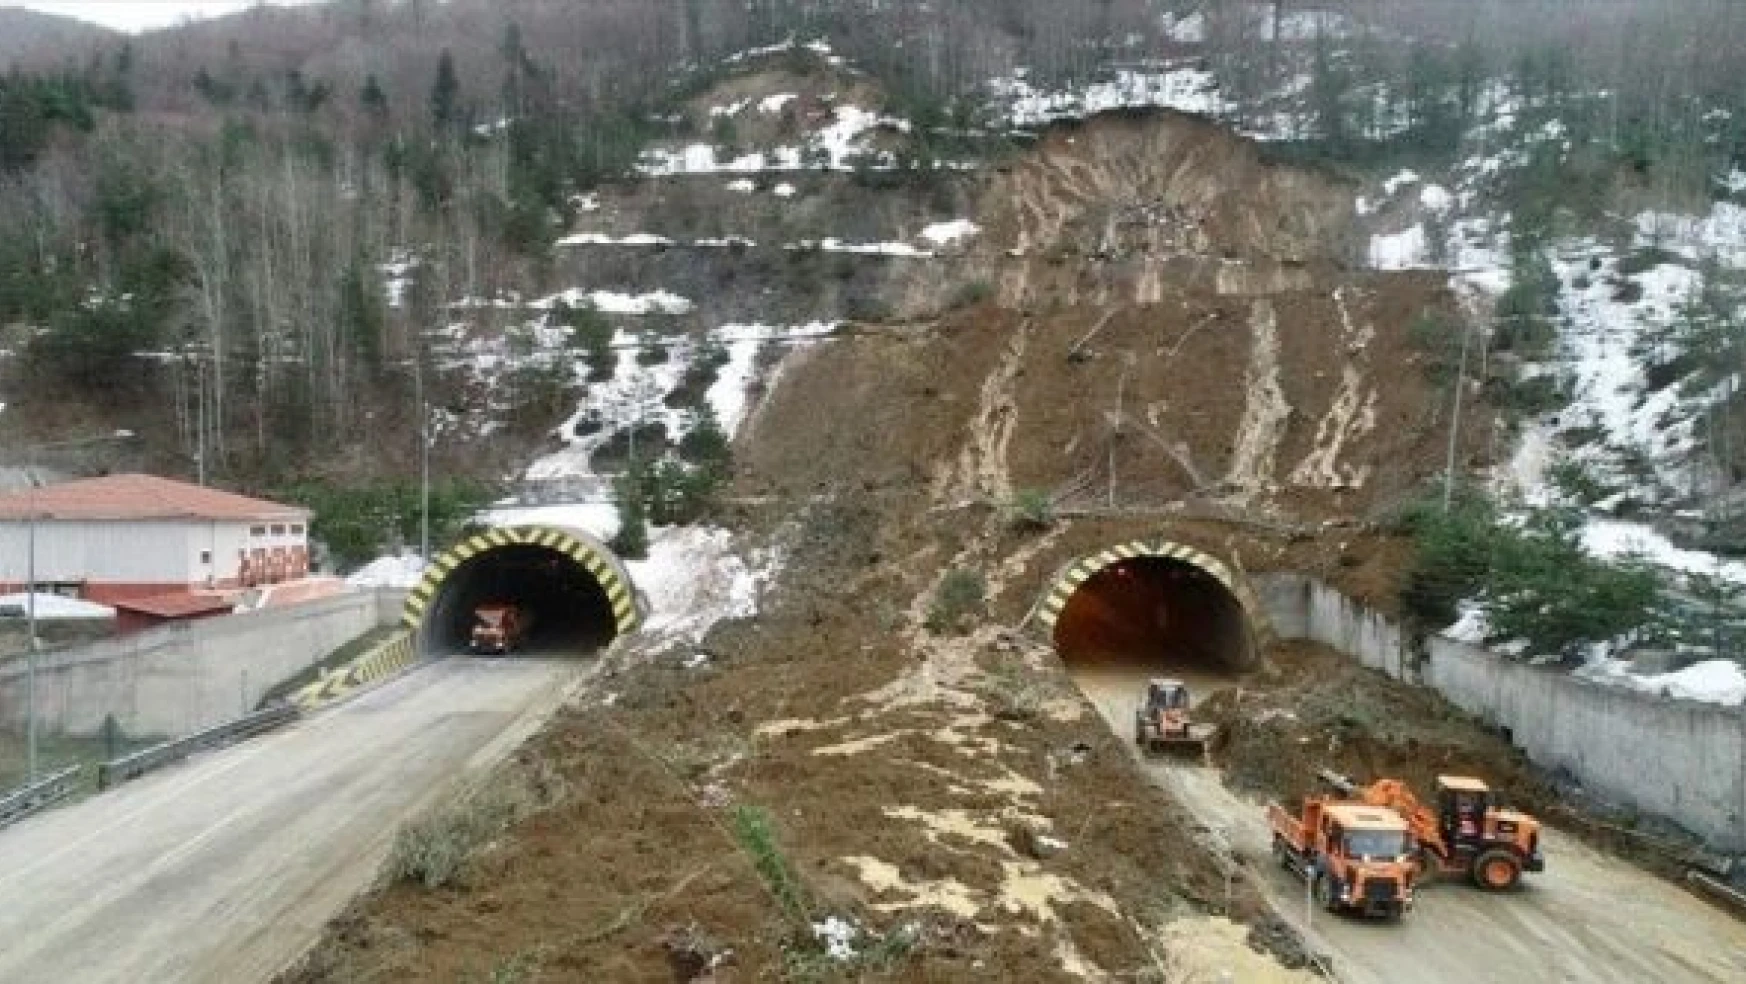 Bolu Dağı Tüneli'nde yol açma çalışmaları devam ediyor!